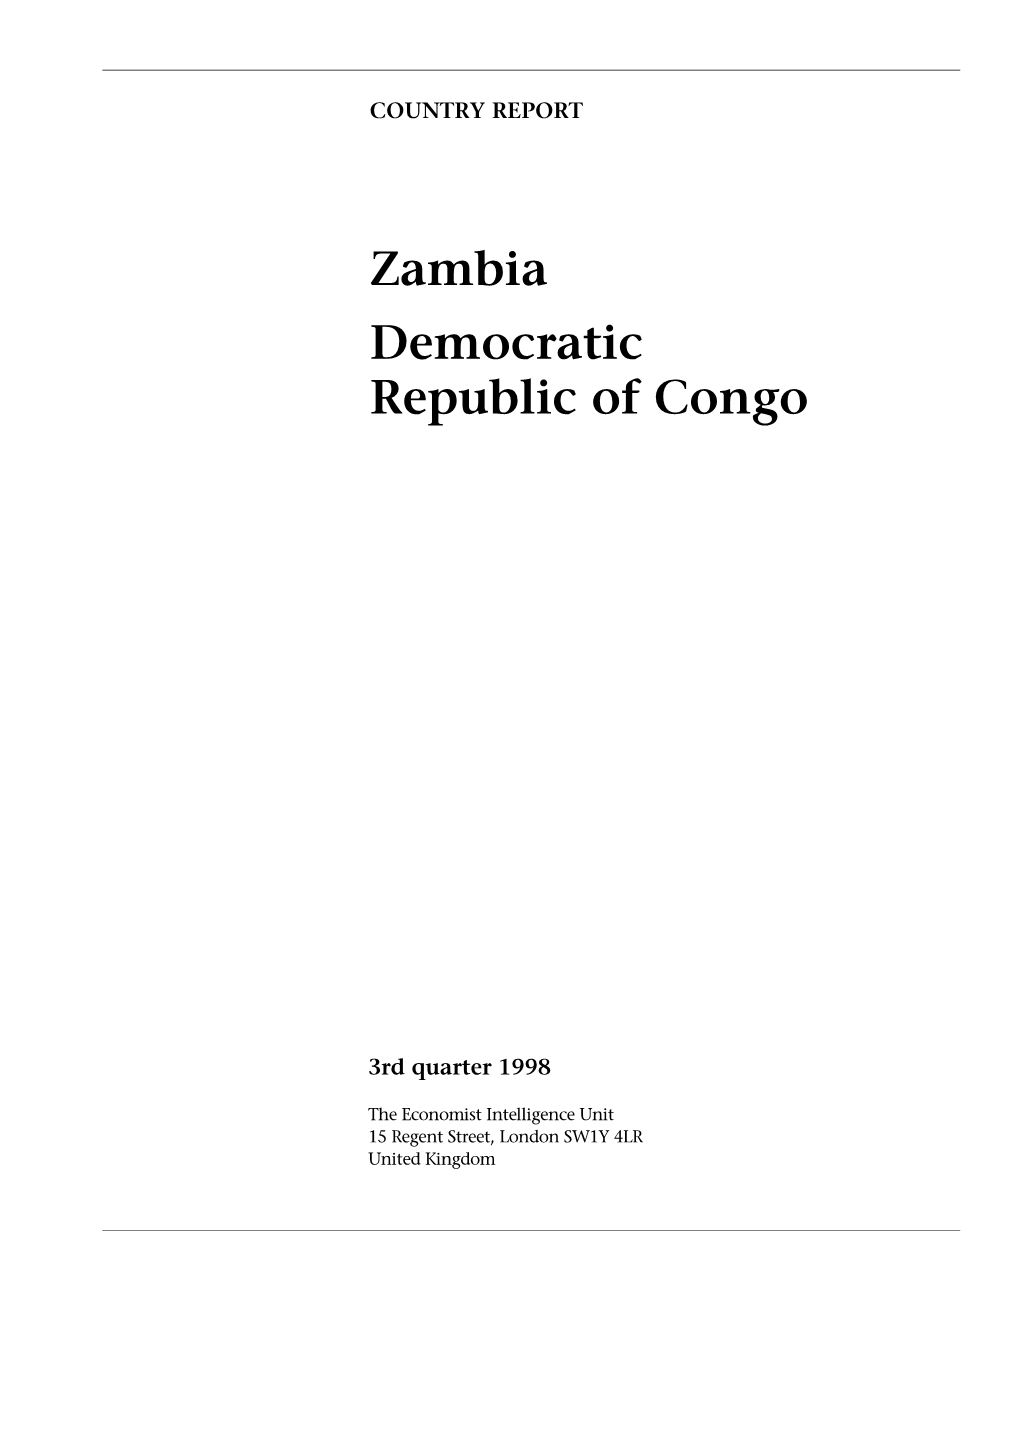 Zambia Democratic Republic of Congo